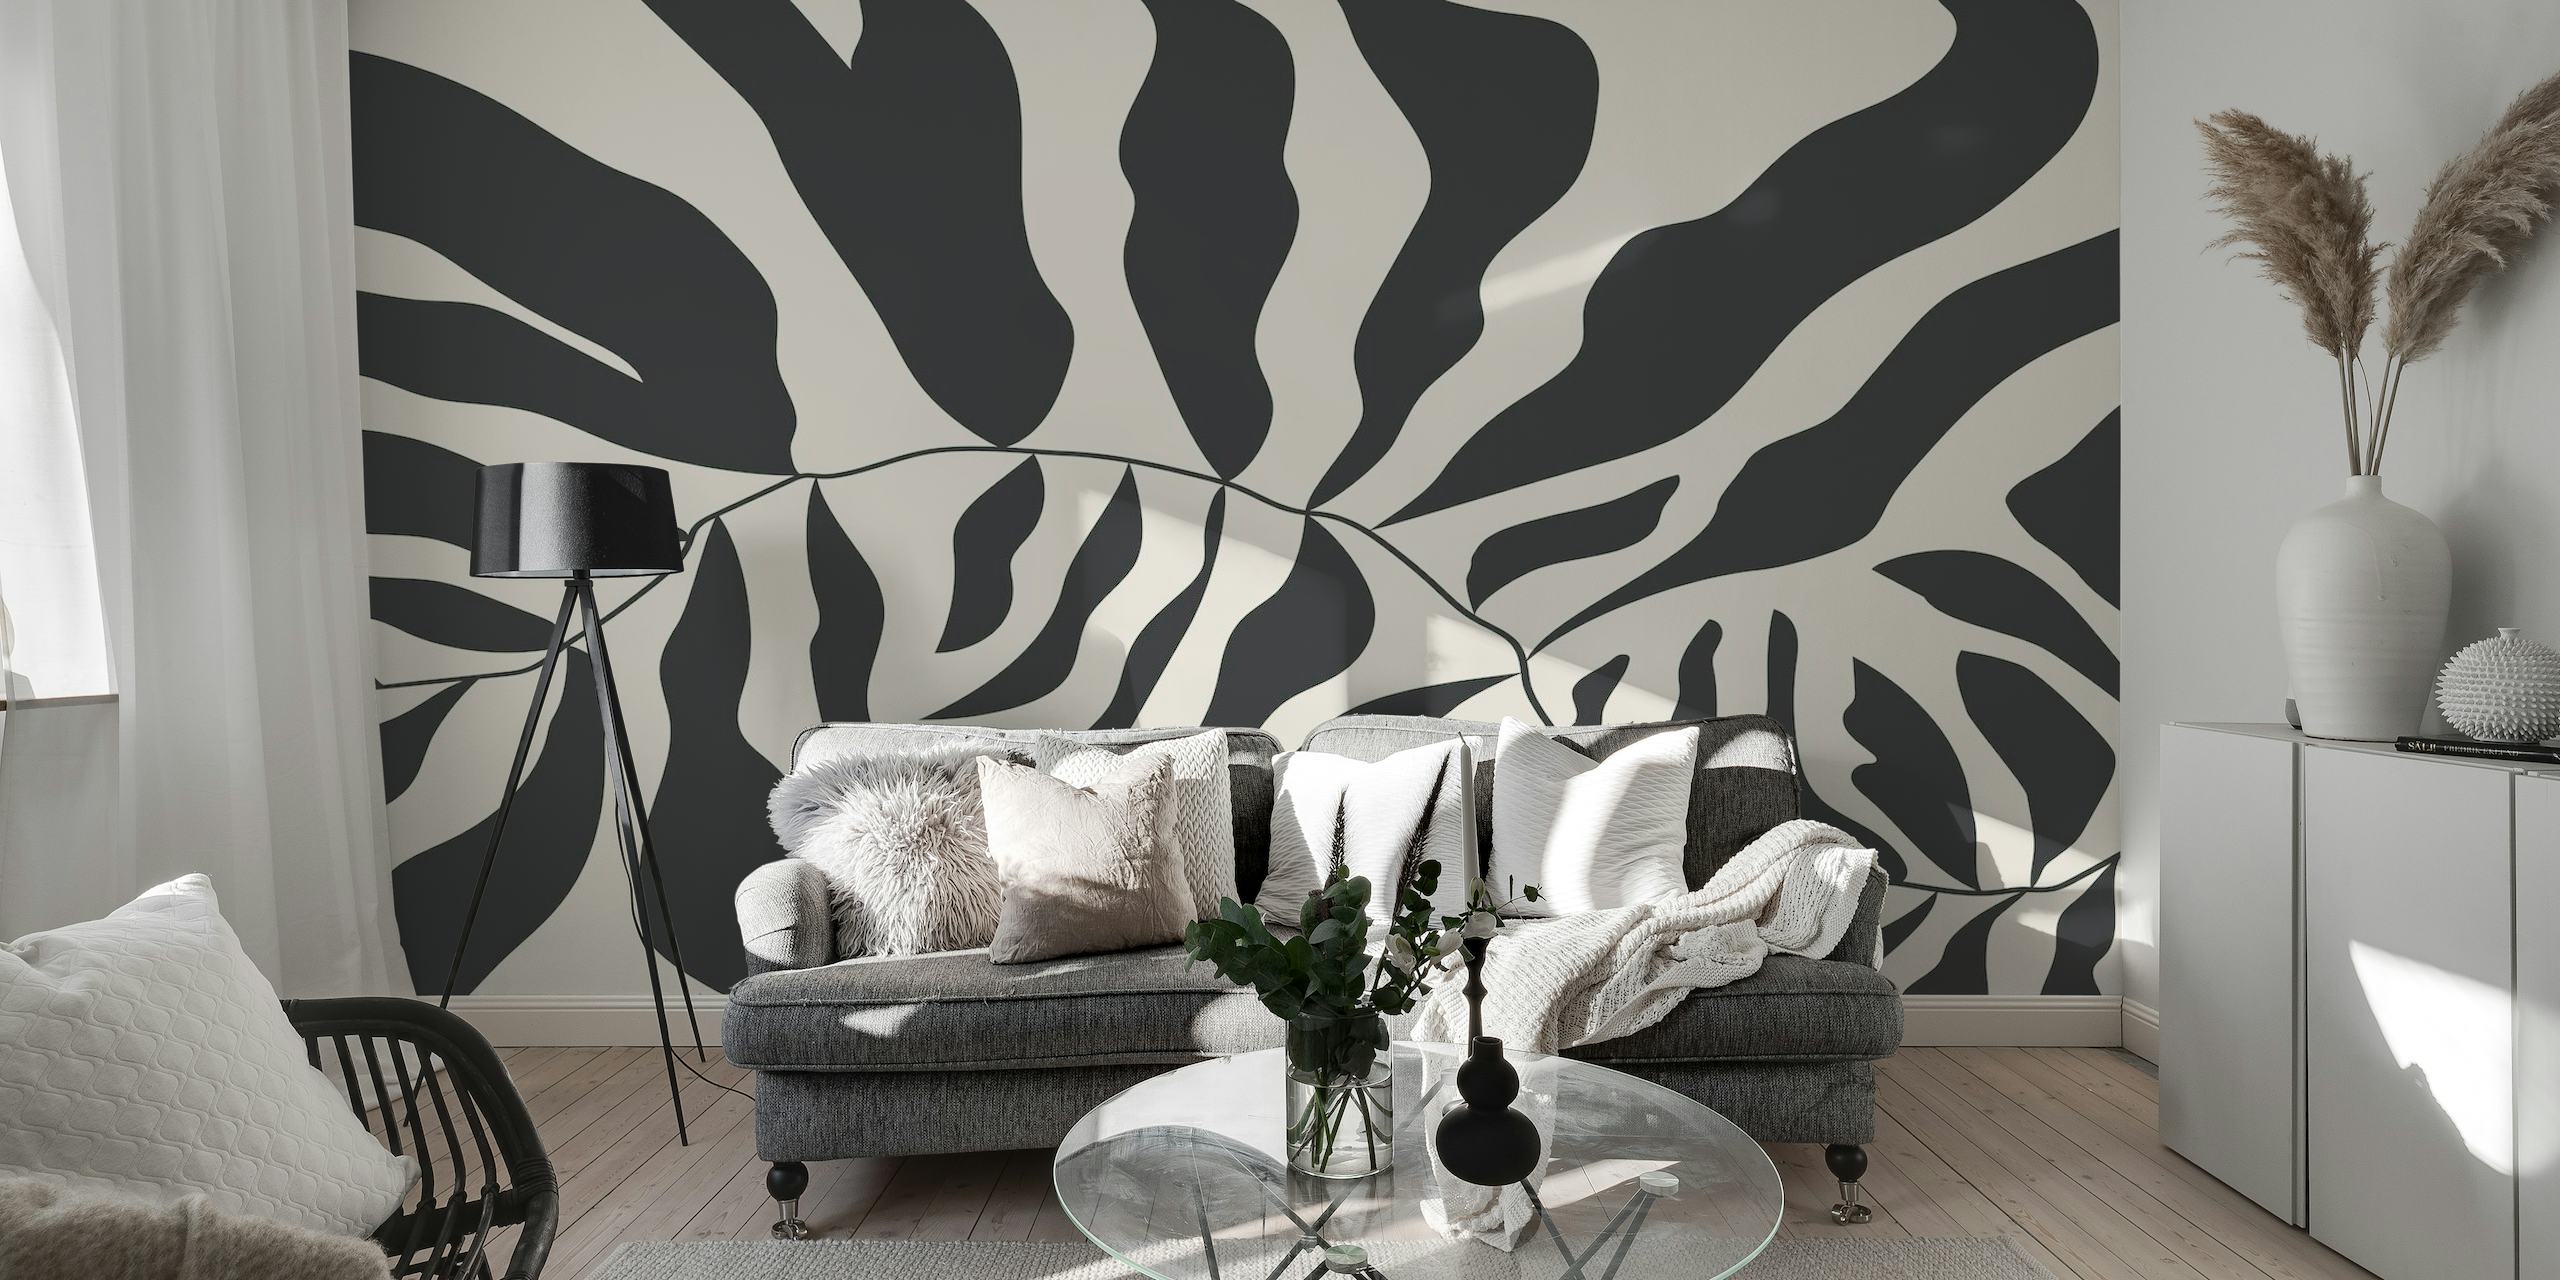 Czarno-biała abstrakcyjna fototapeta w stylu Matisse'a przedstawiająca organiczne kształty